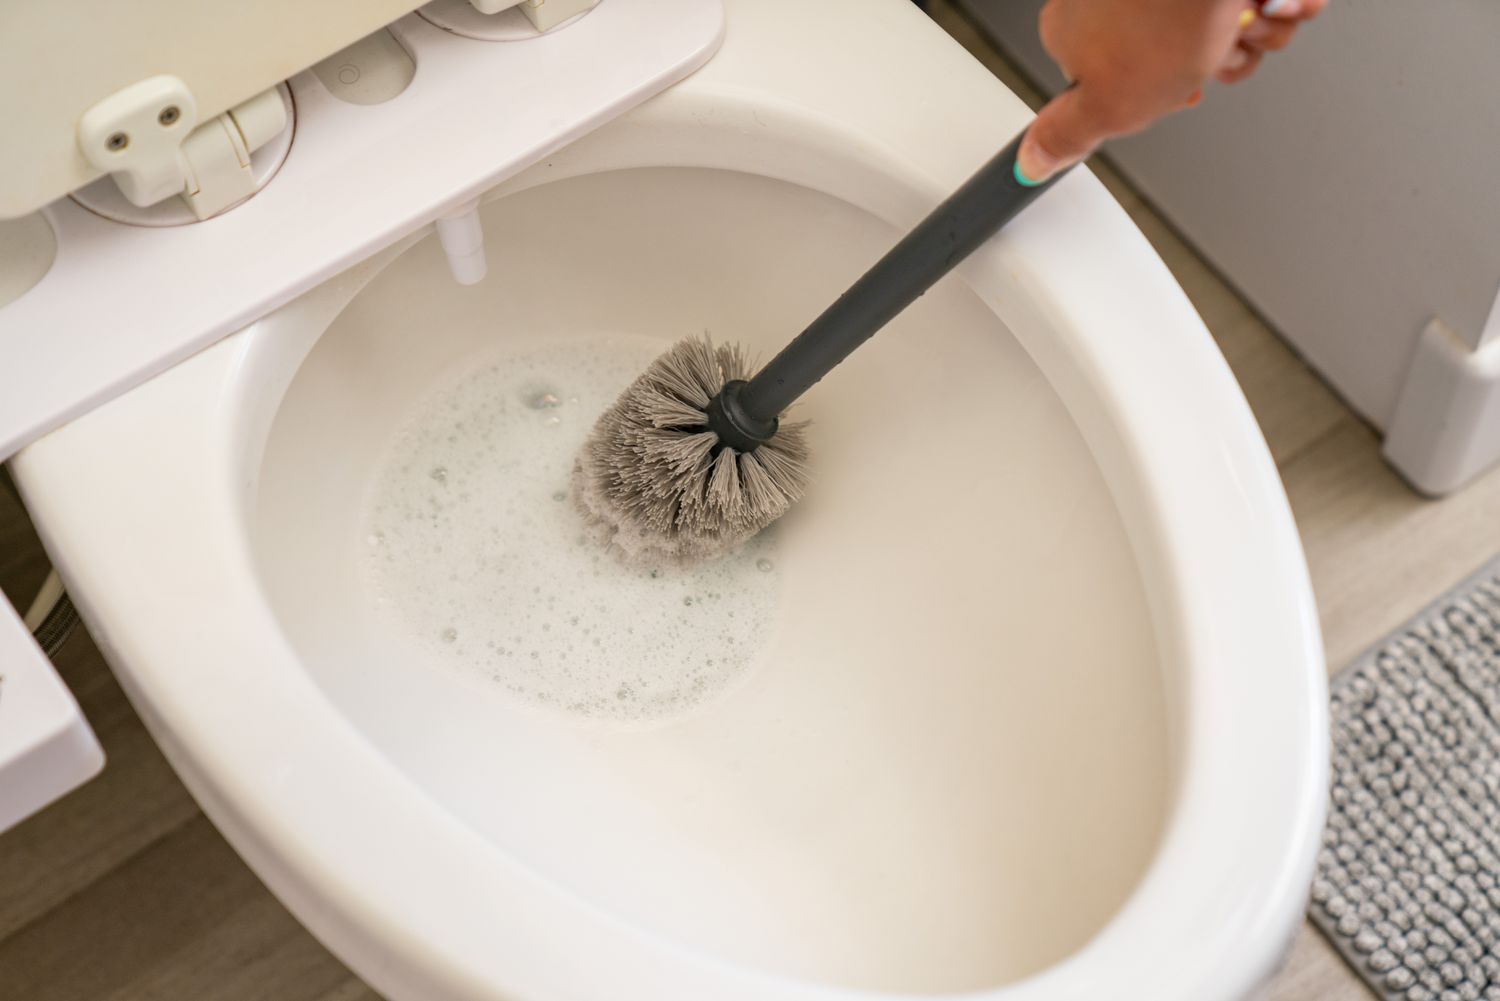 Limpieza de la taza del baño con un limpiador multiusos y un cepillo